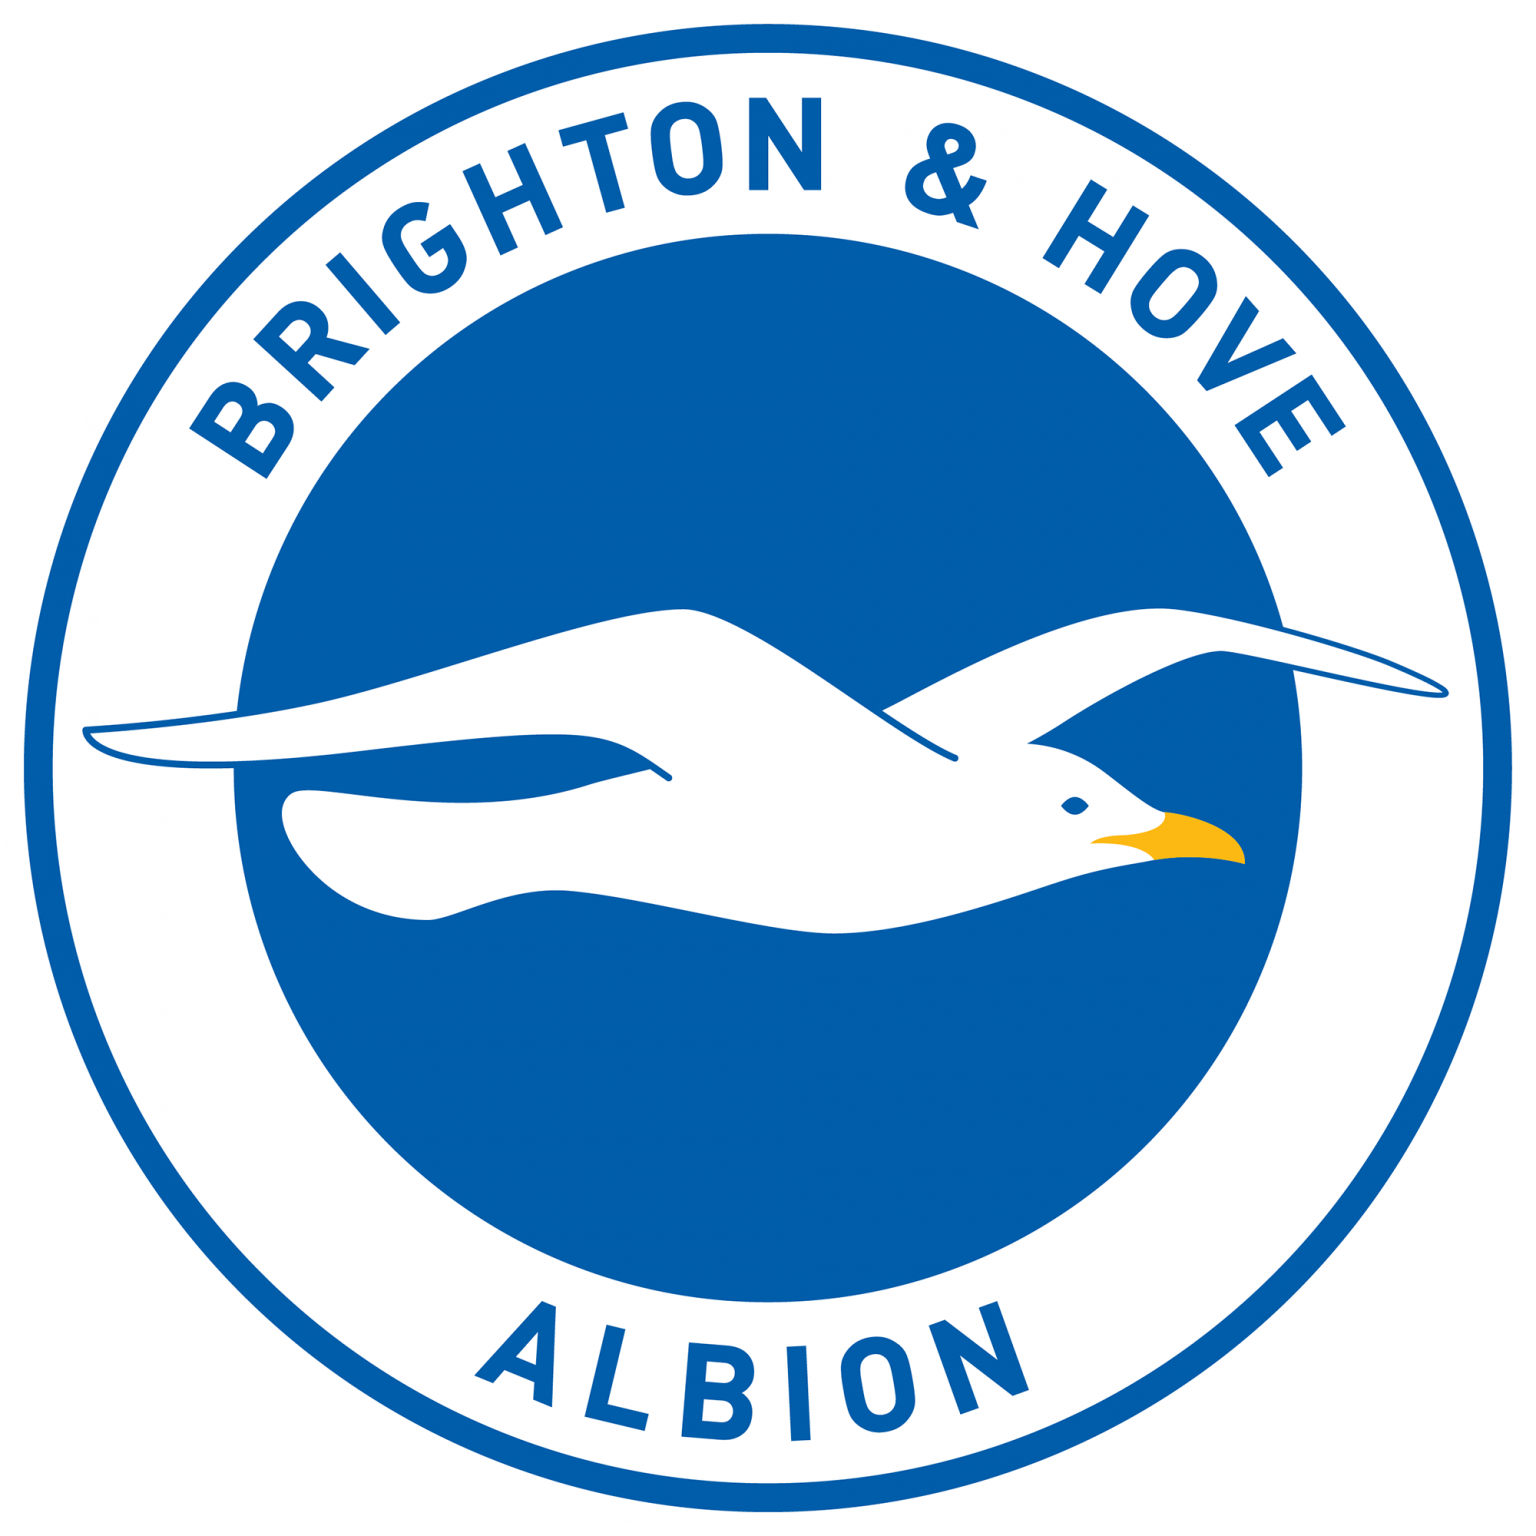 Brighton Hove Albion FC